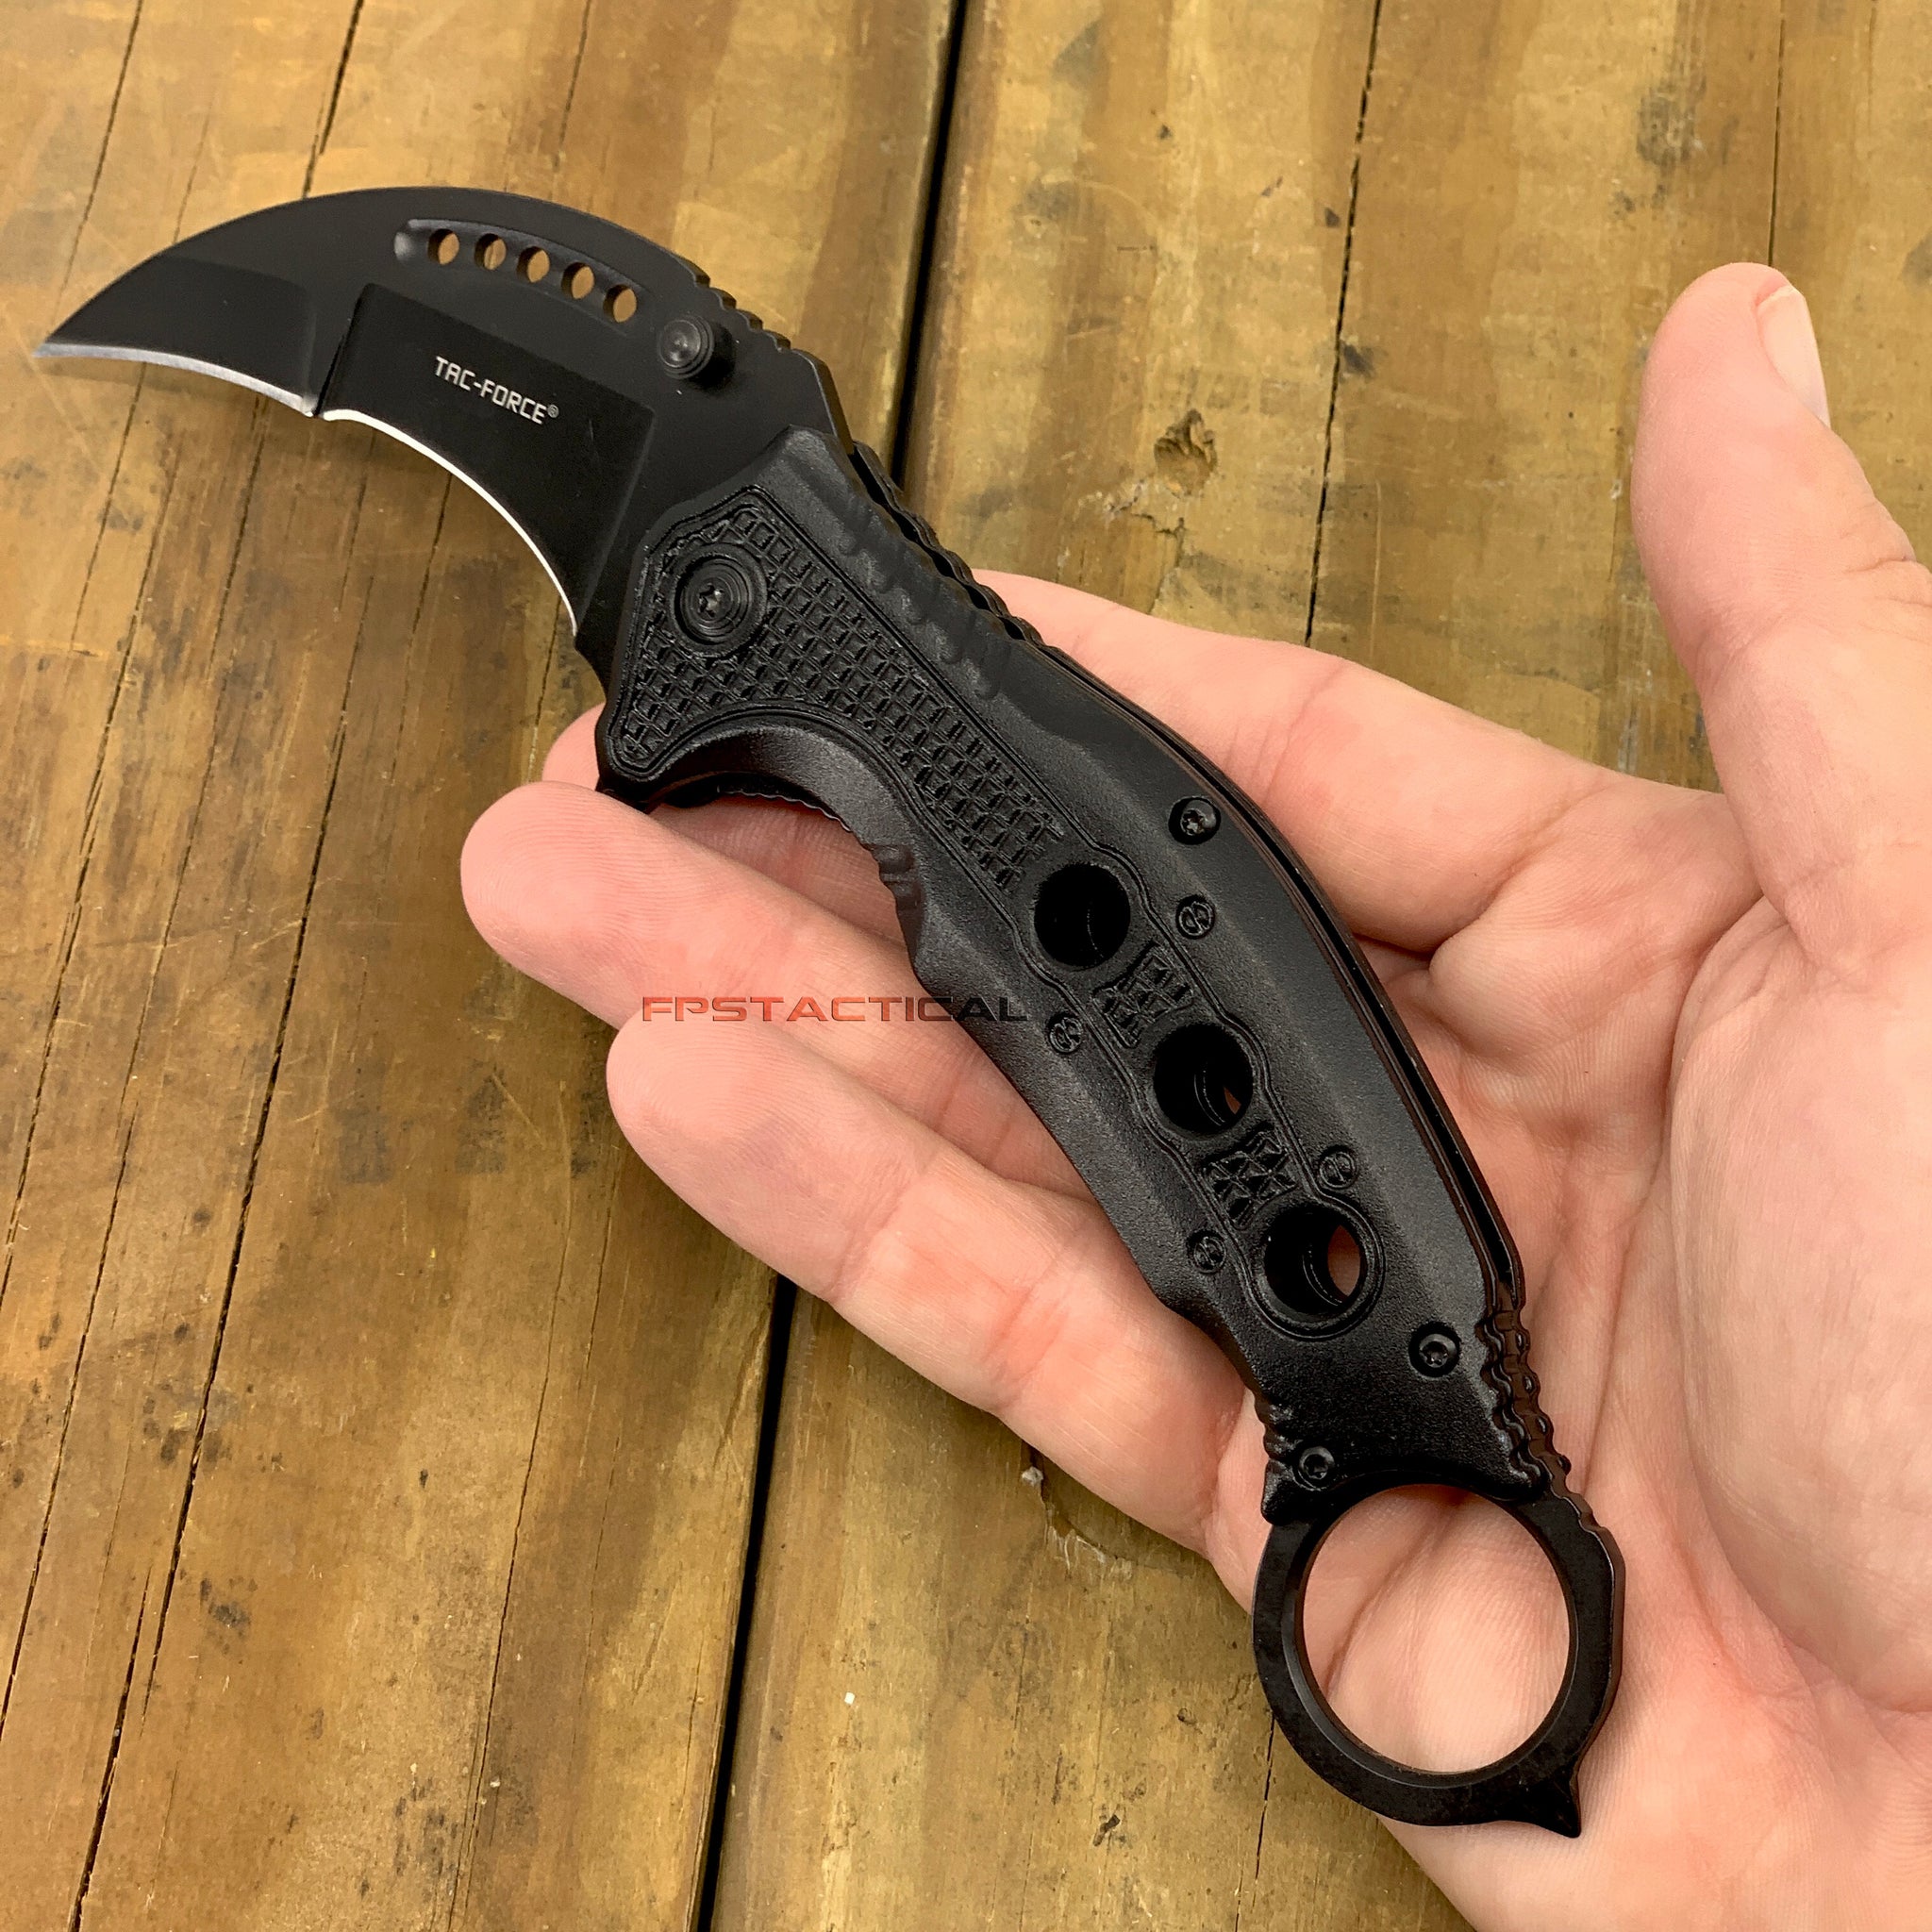 BLACK SPRING ASSISTED OPEN POCKET KNIFE Tactical Folding Blade TAC